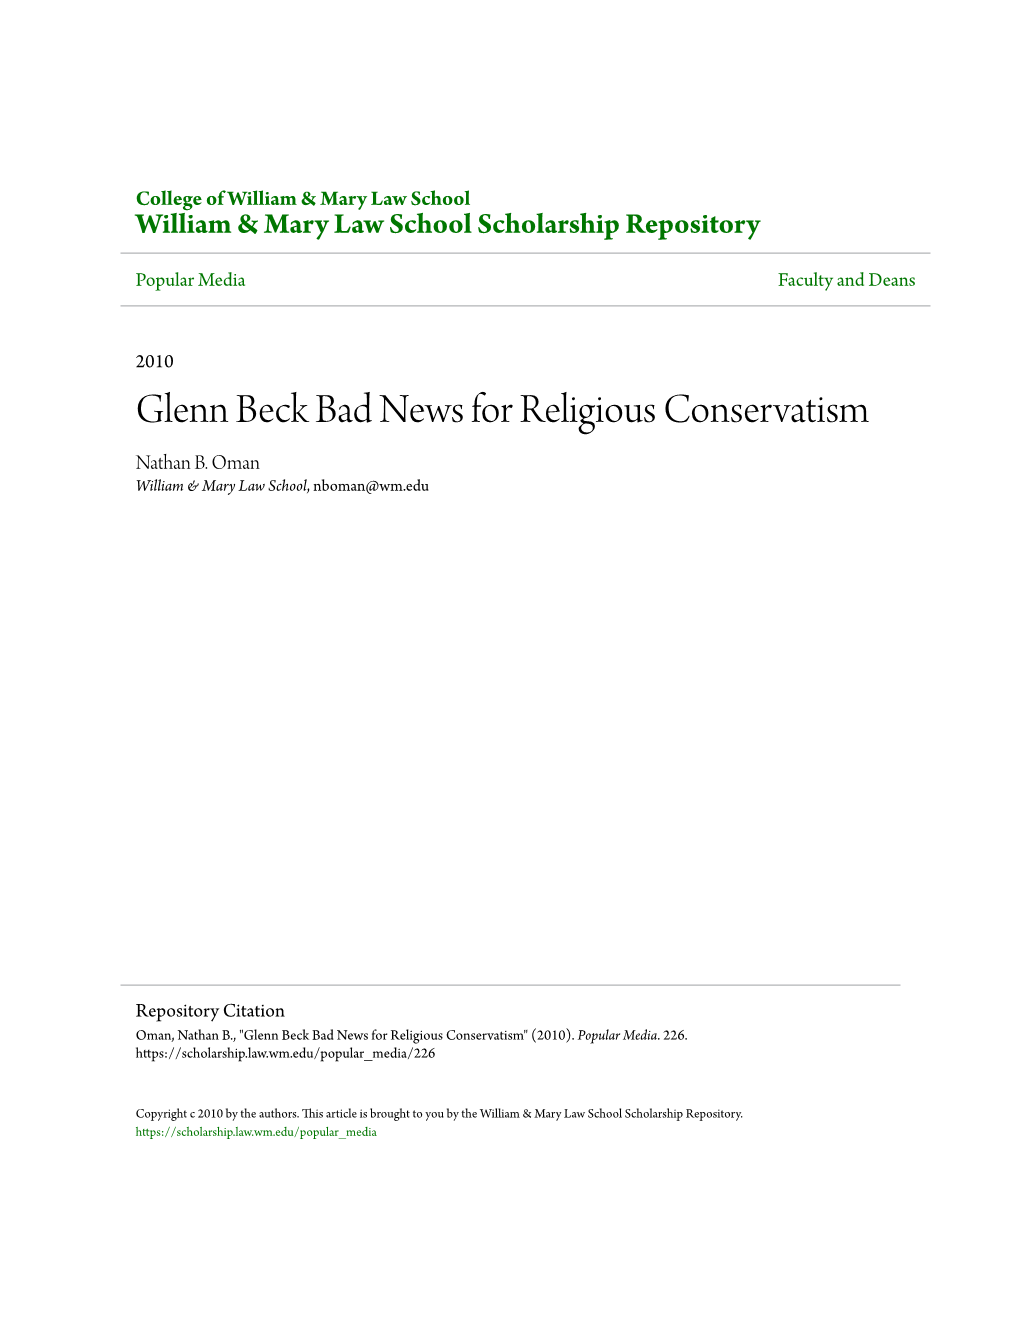 Glenn Beck Bad News for Religious Conservatism Nathan B